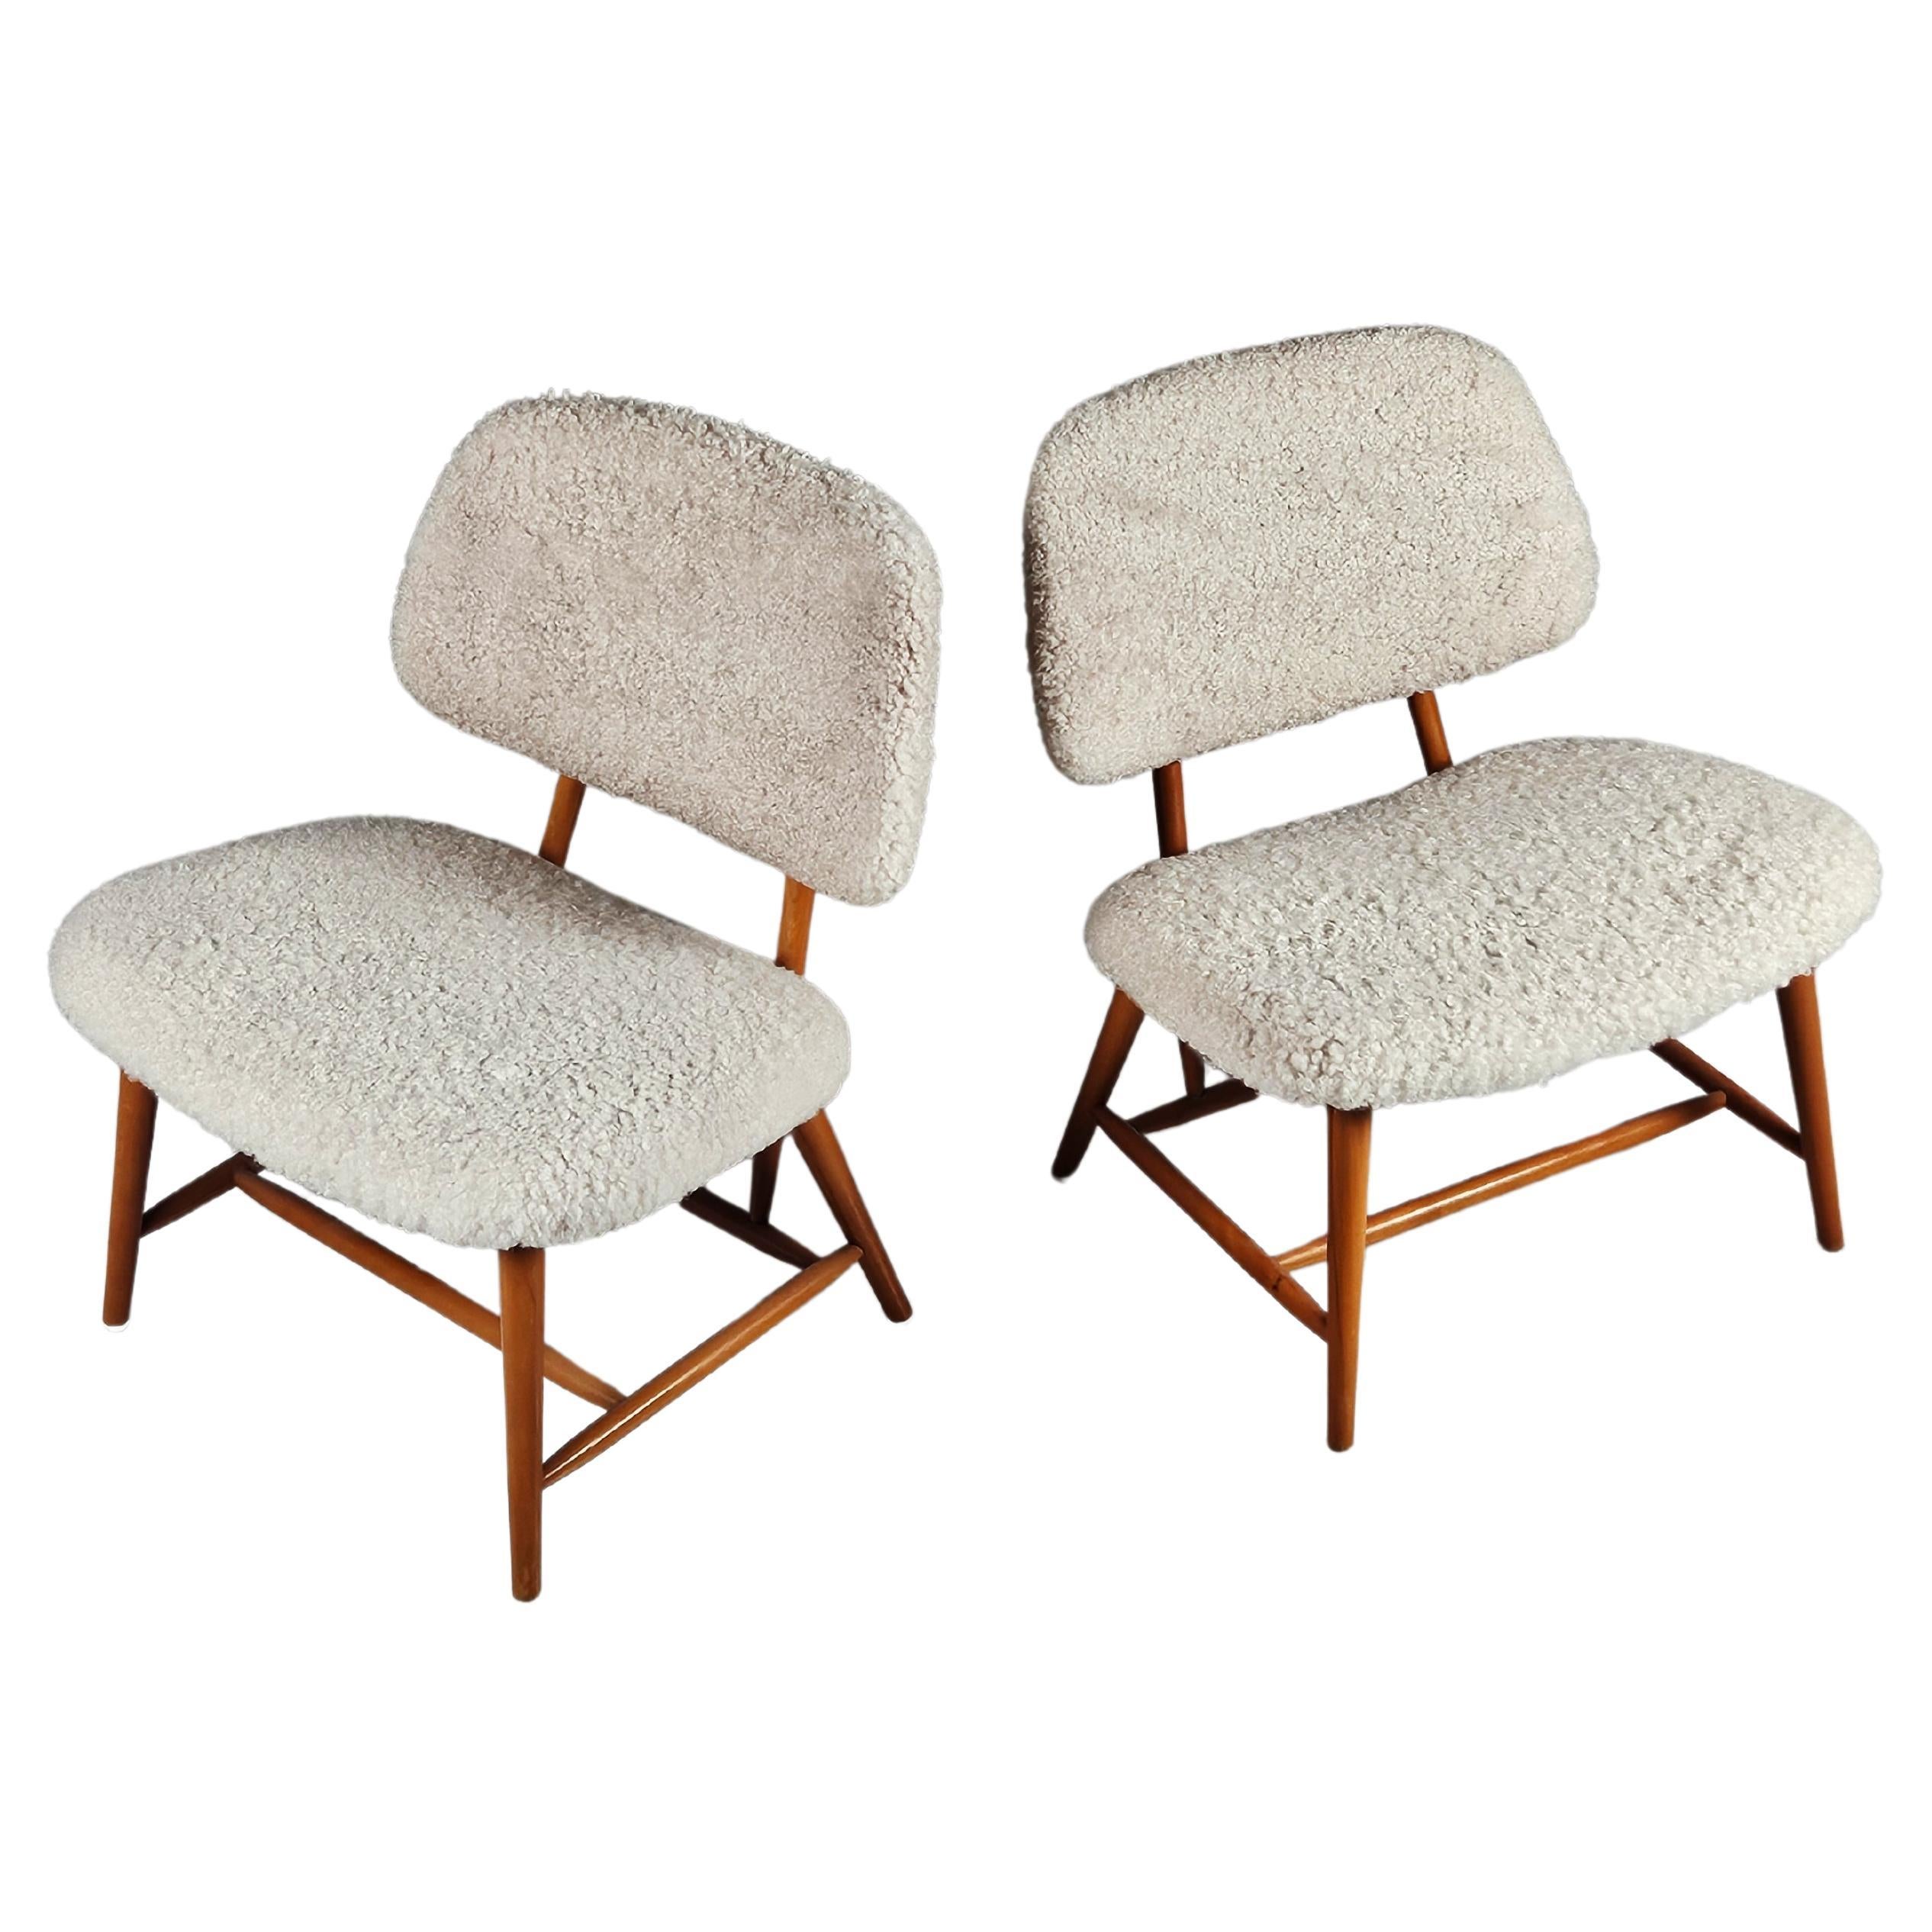 Scandinavian modern 'Teve' chairs by Alf Svensson for Bra Bohag, Sweden, 1950s